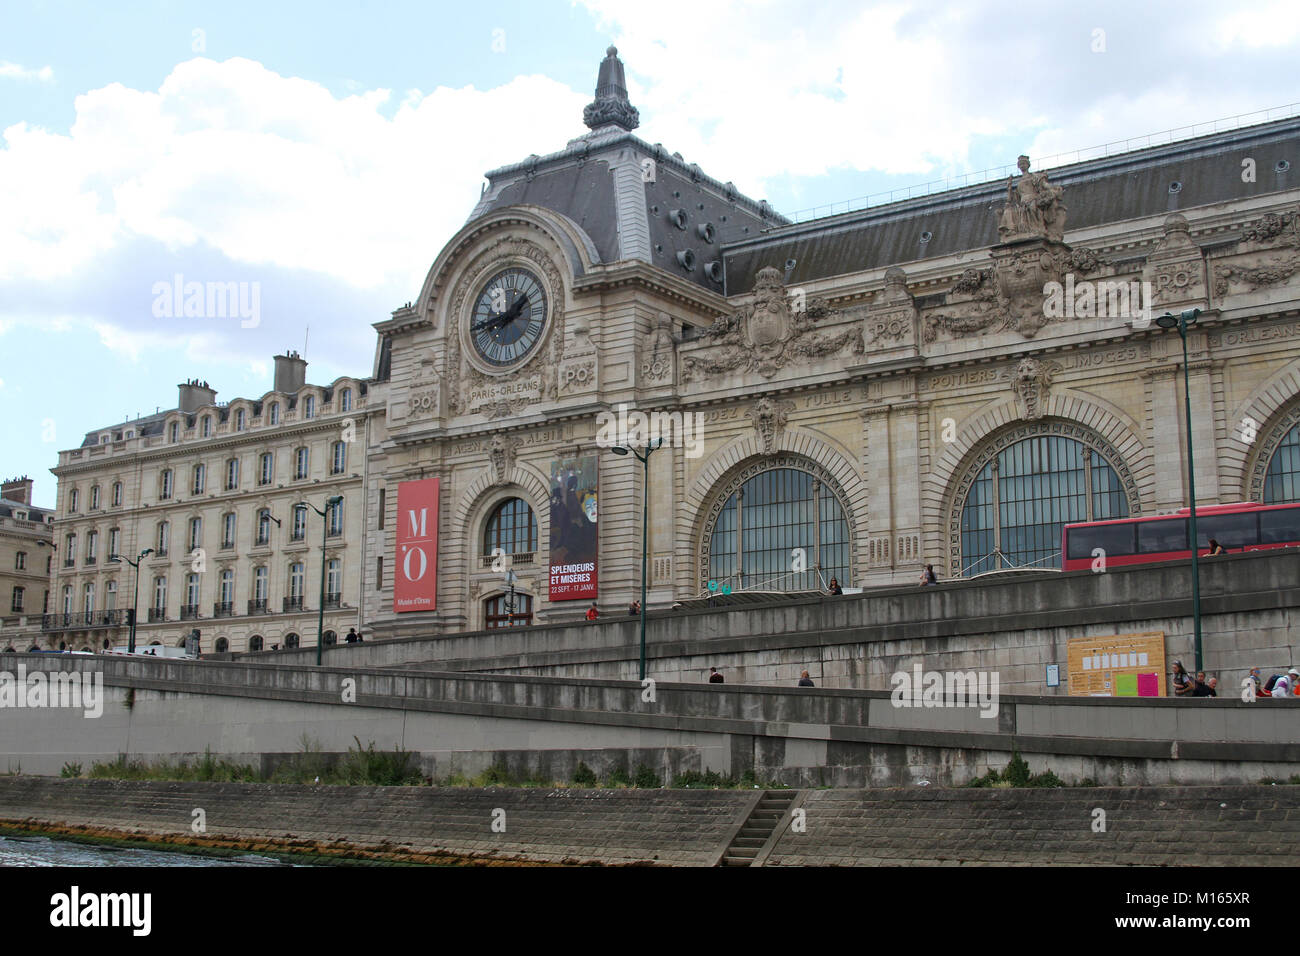 Ansicht der vorderen linken Uhr mit Werbung und Straßen von der Seine im Musée d'Orsay, Paris, Frankreich gesehen. Stockfoto